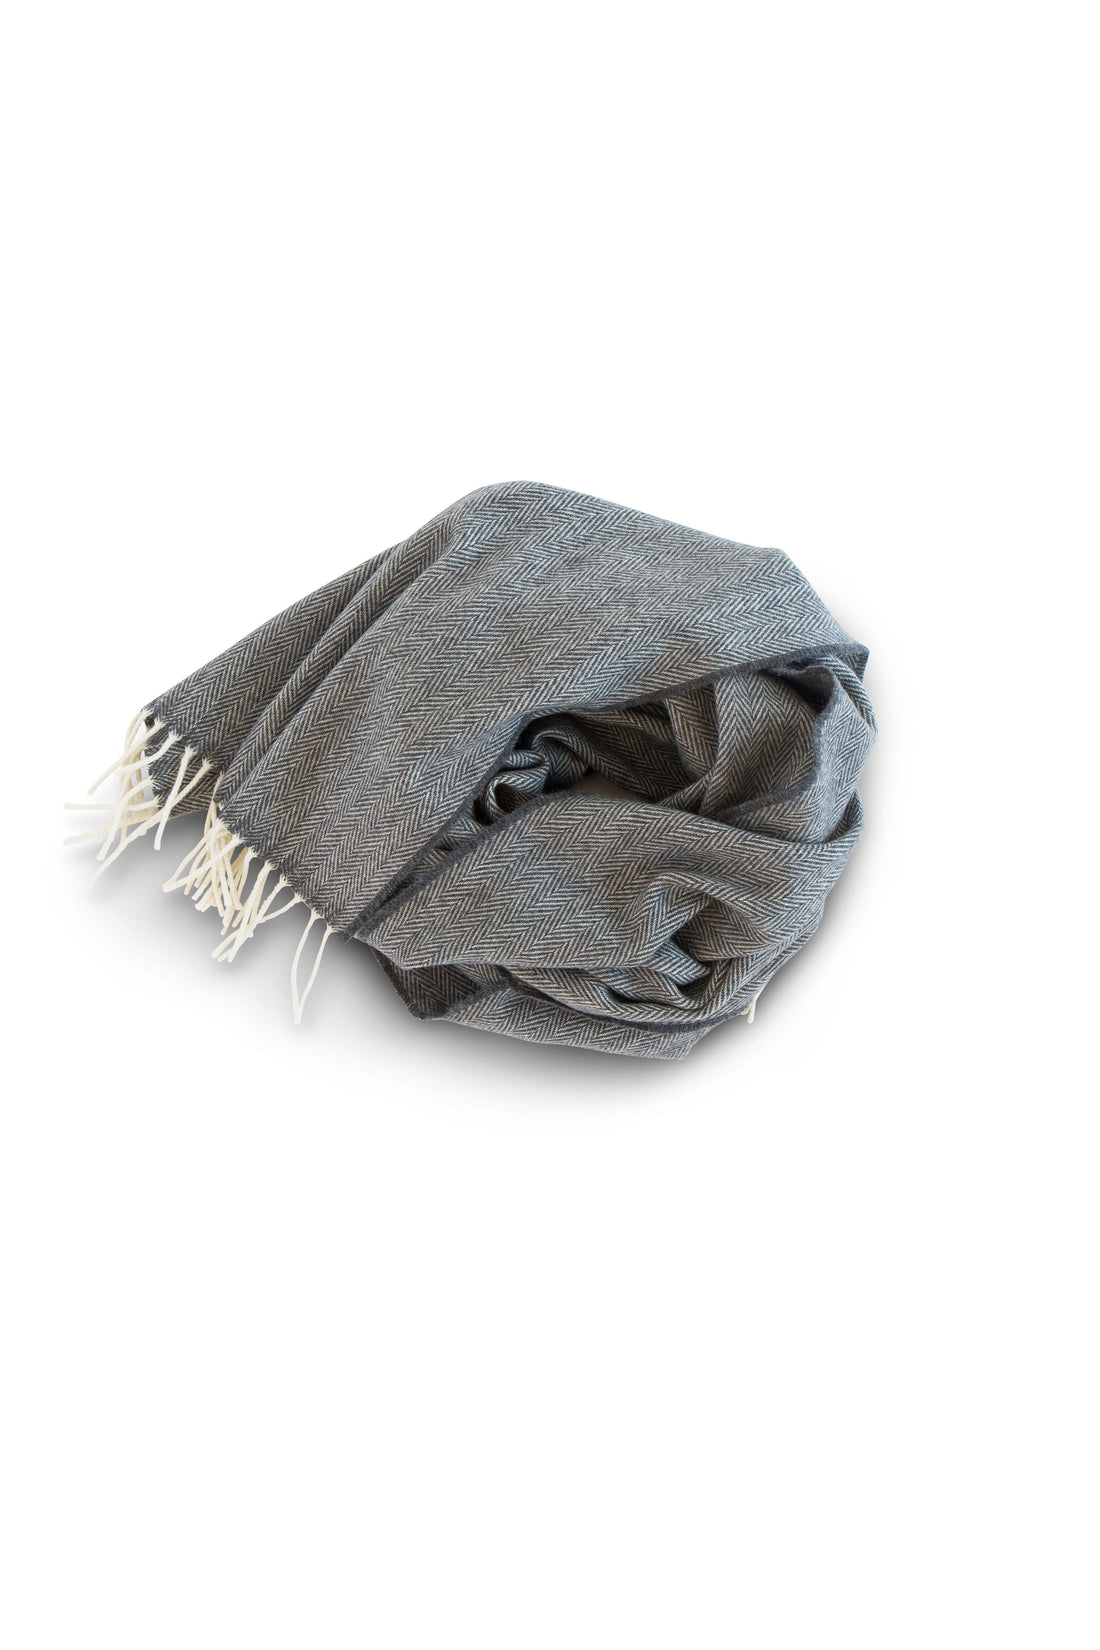 Merino lambswool 5% cashmere wearable wrap in herringbone graphite